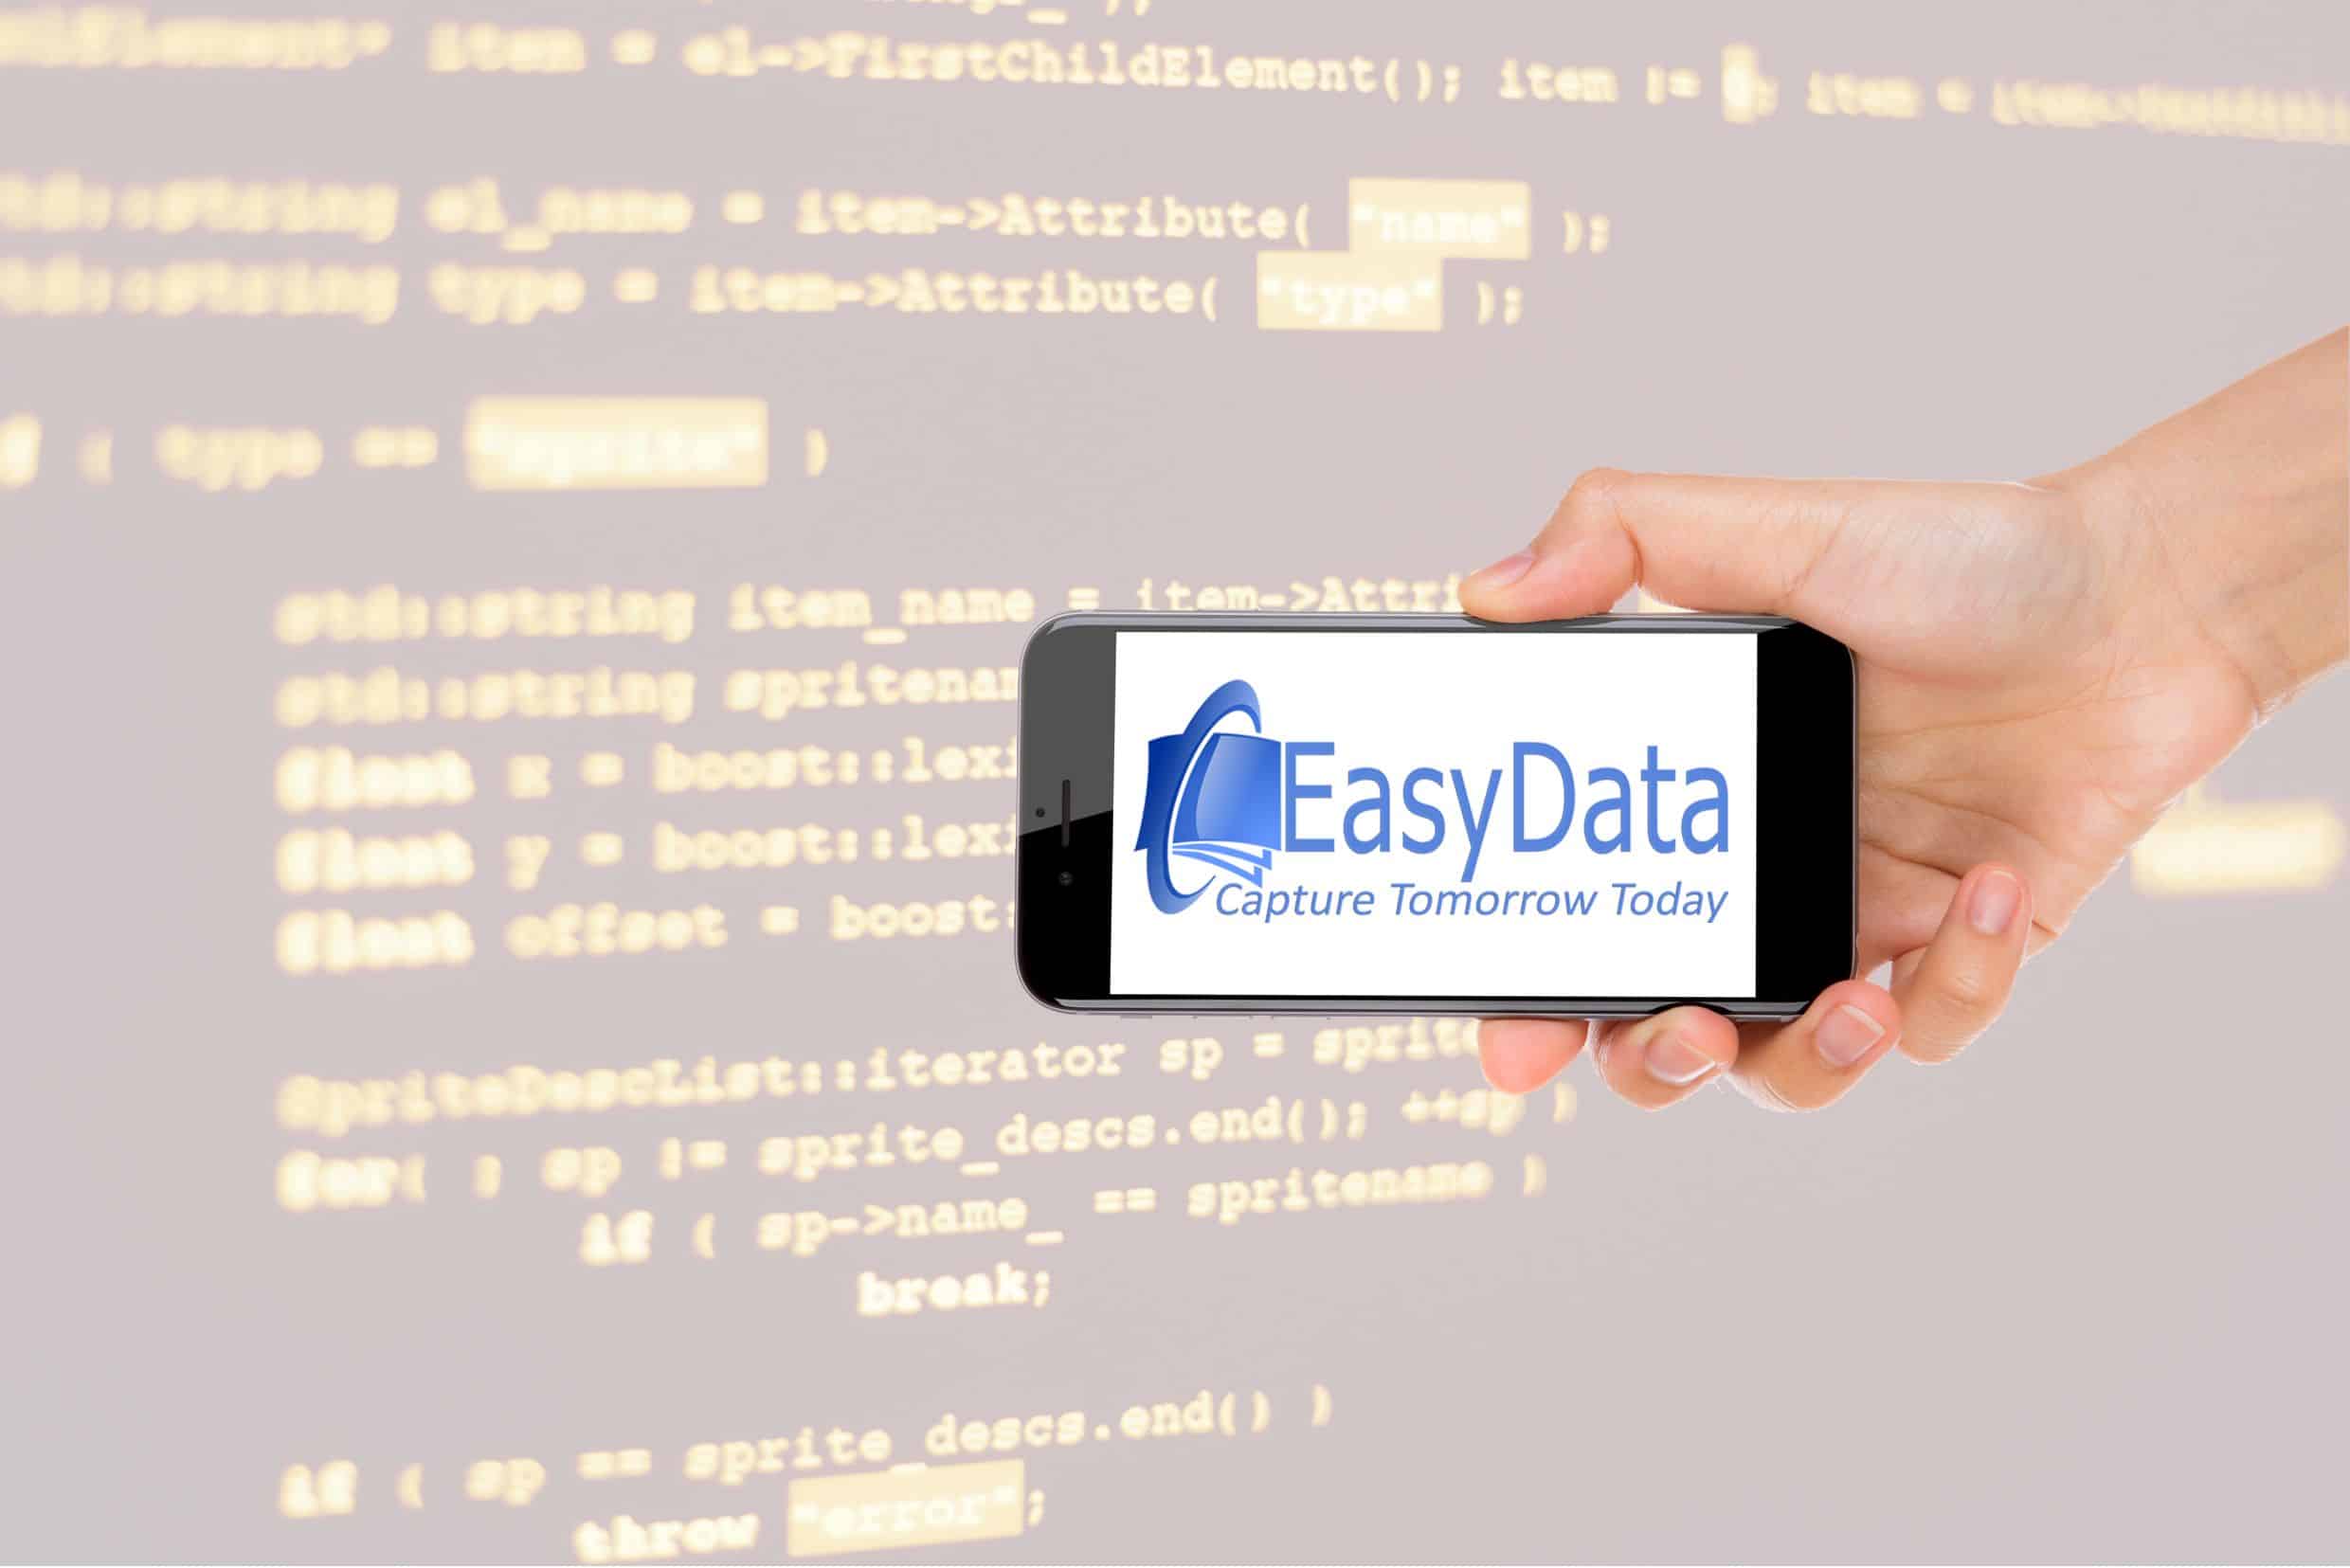 Applicatie-integratie is de expertise van EasyData